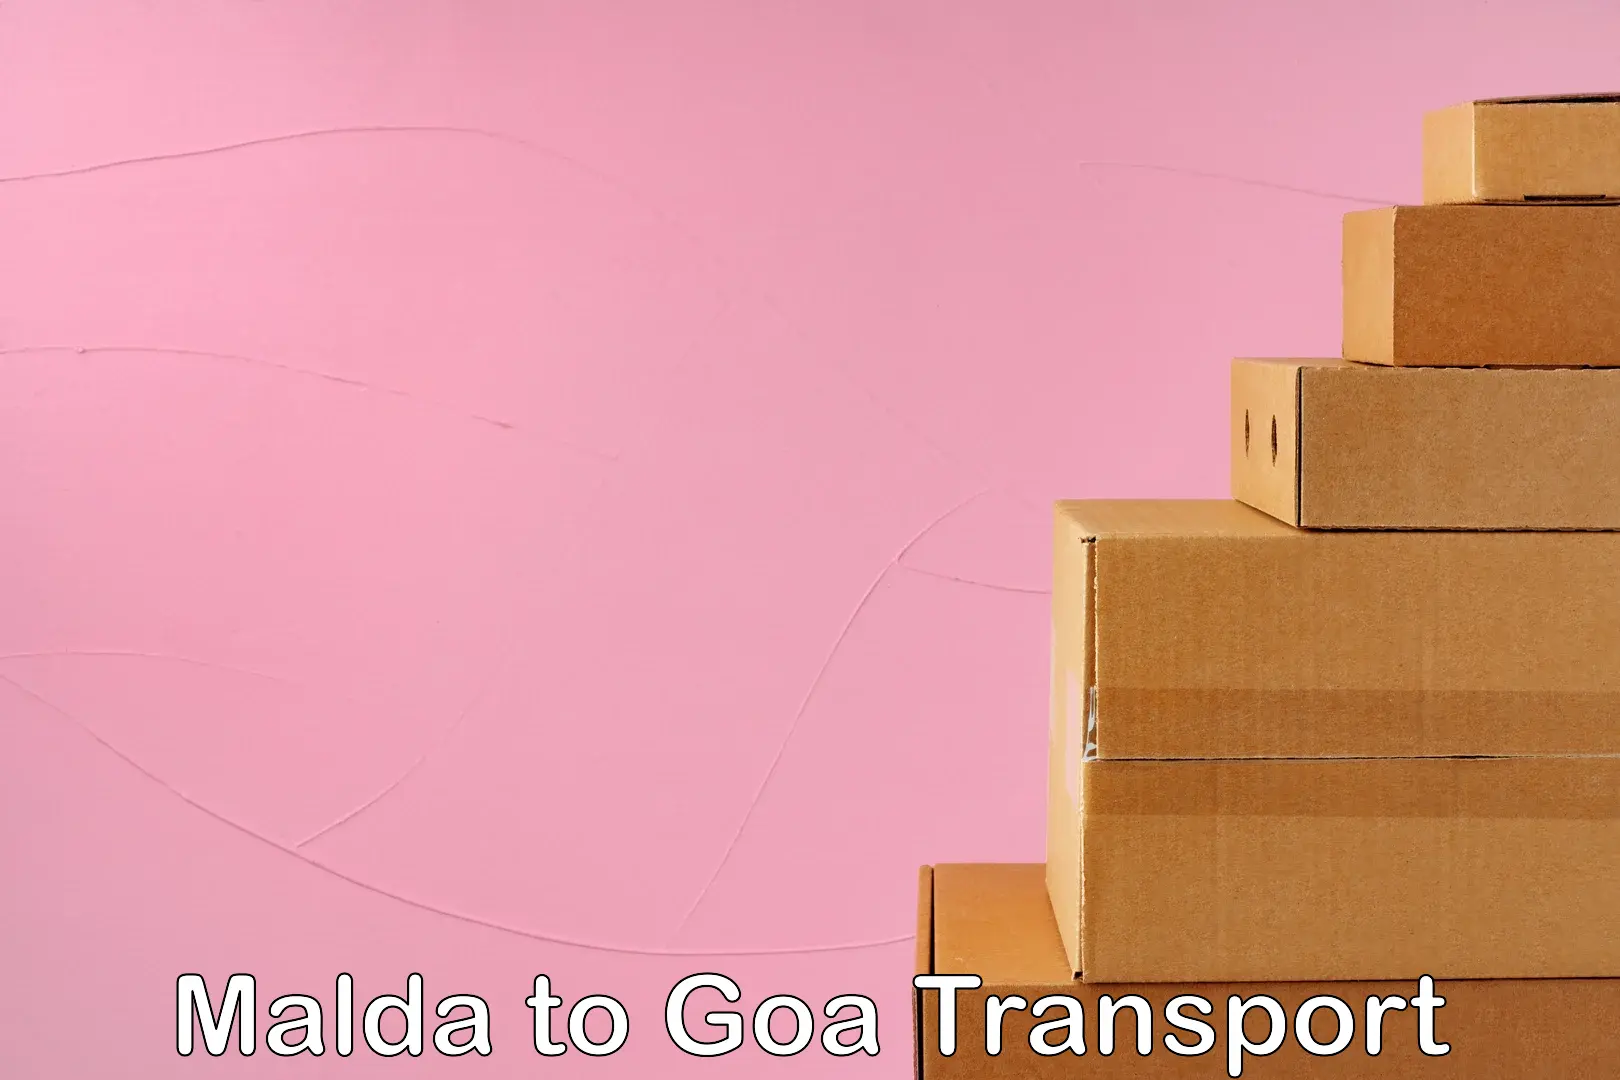 Delivery service Malda to NIT Goa